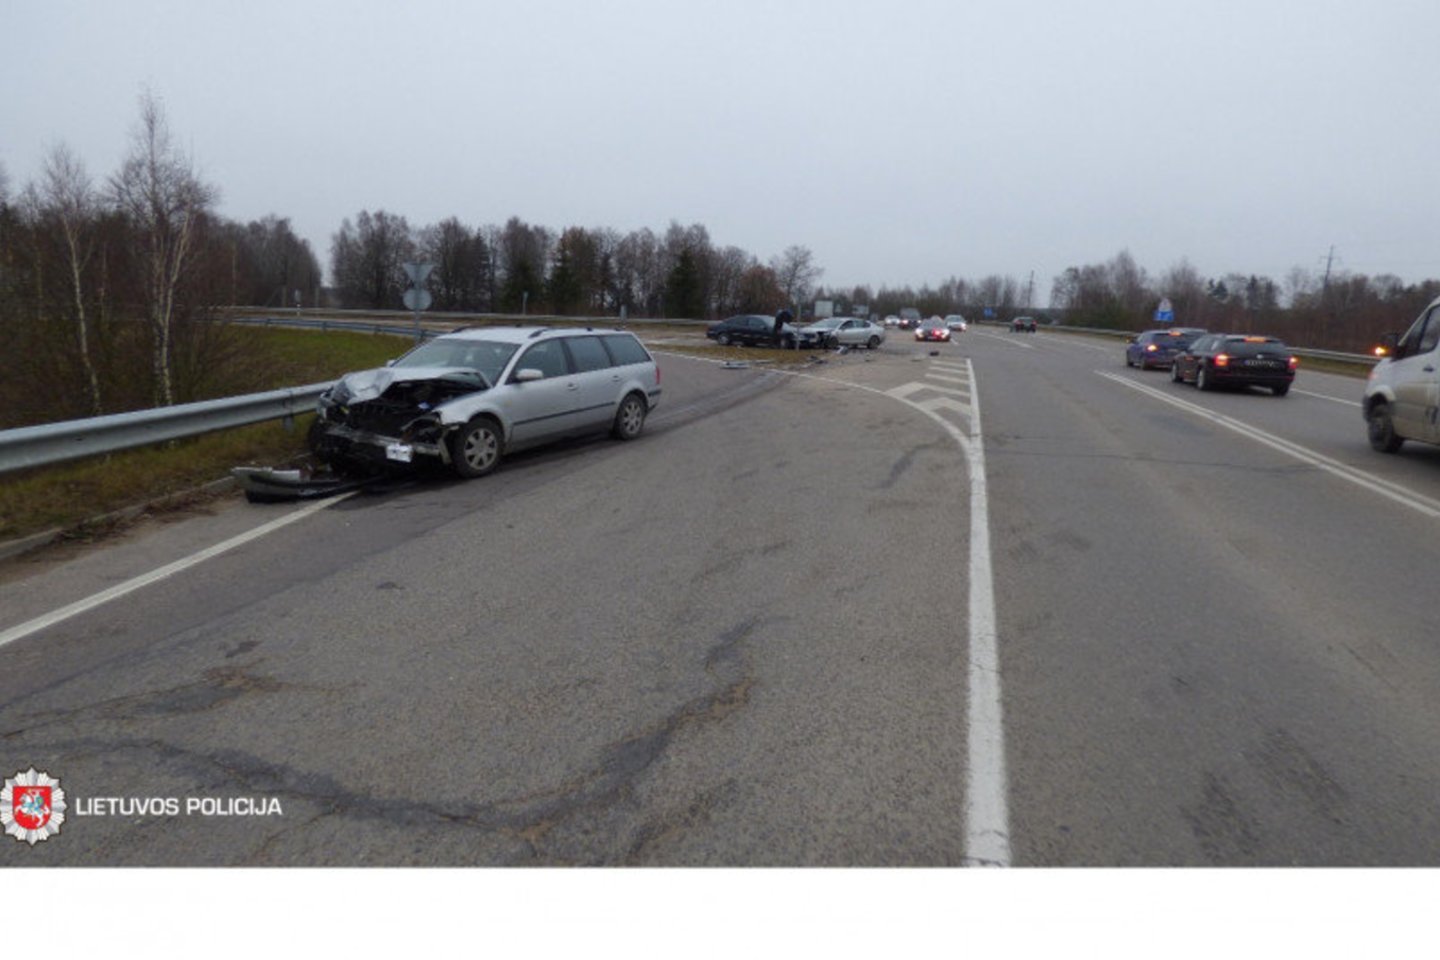 Per trijų automobilių susidūrimą greta Vilniaus sužeisti du žmonės.<br> LKPT nuotr.